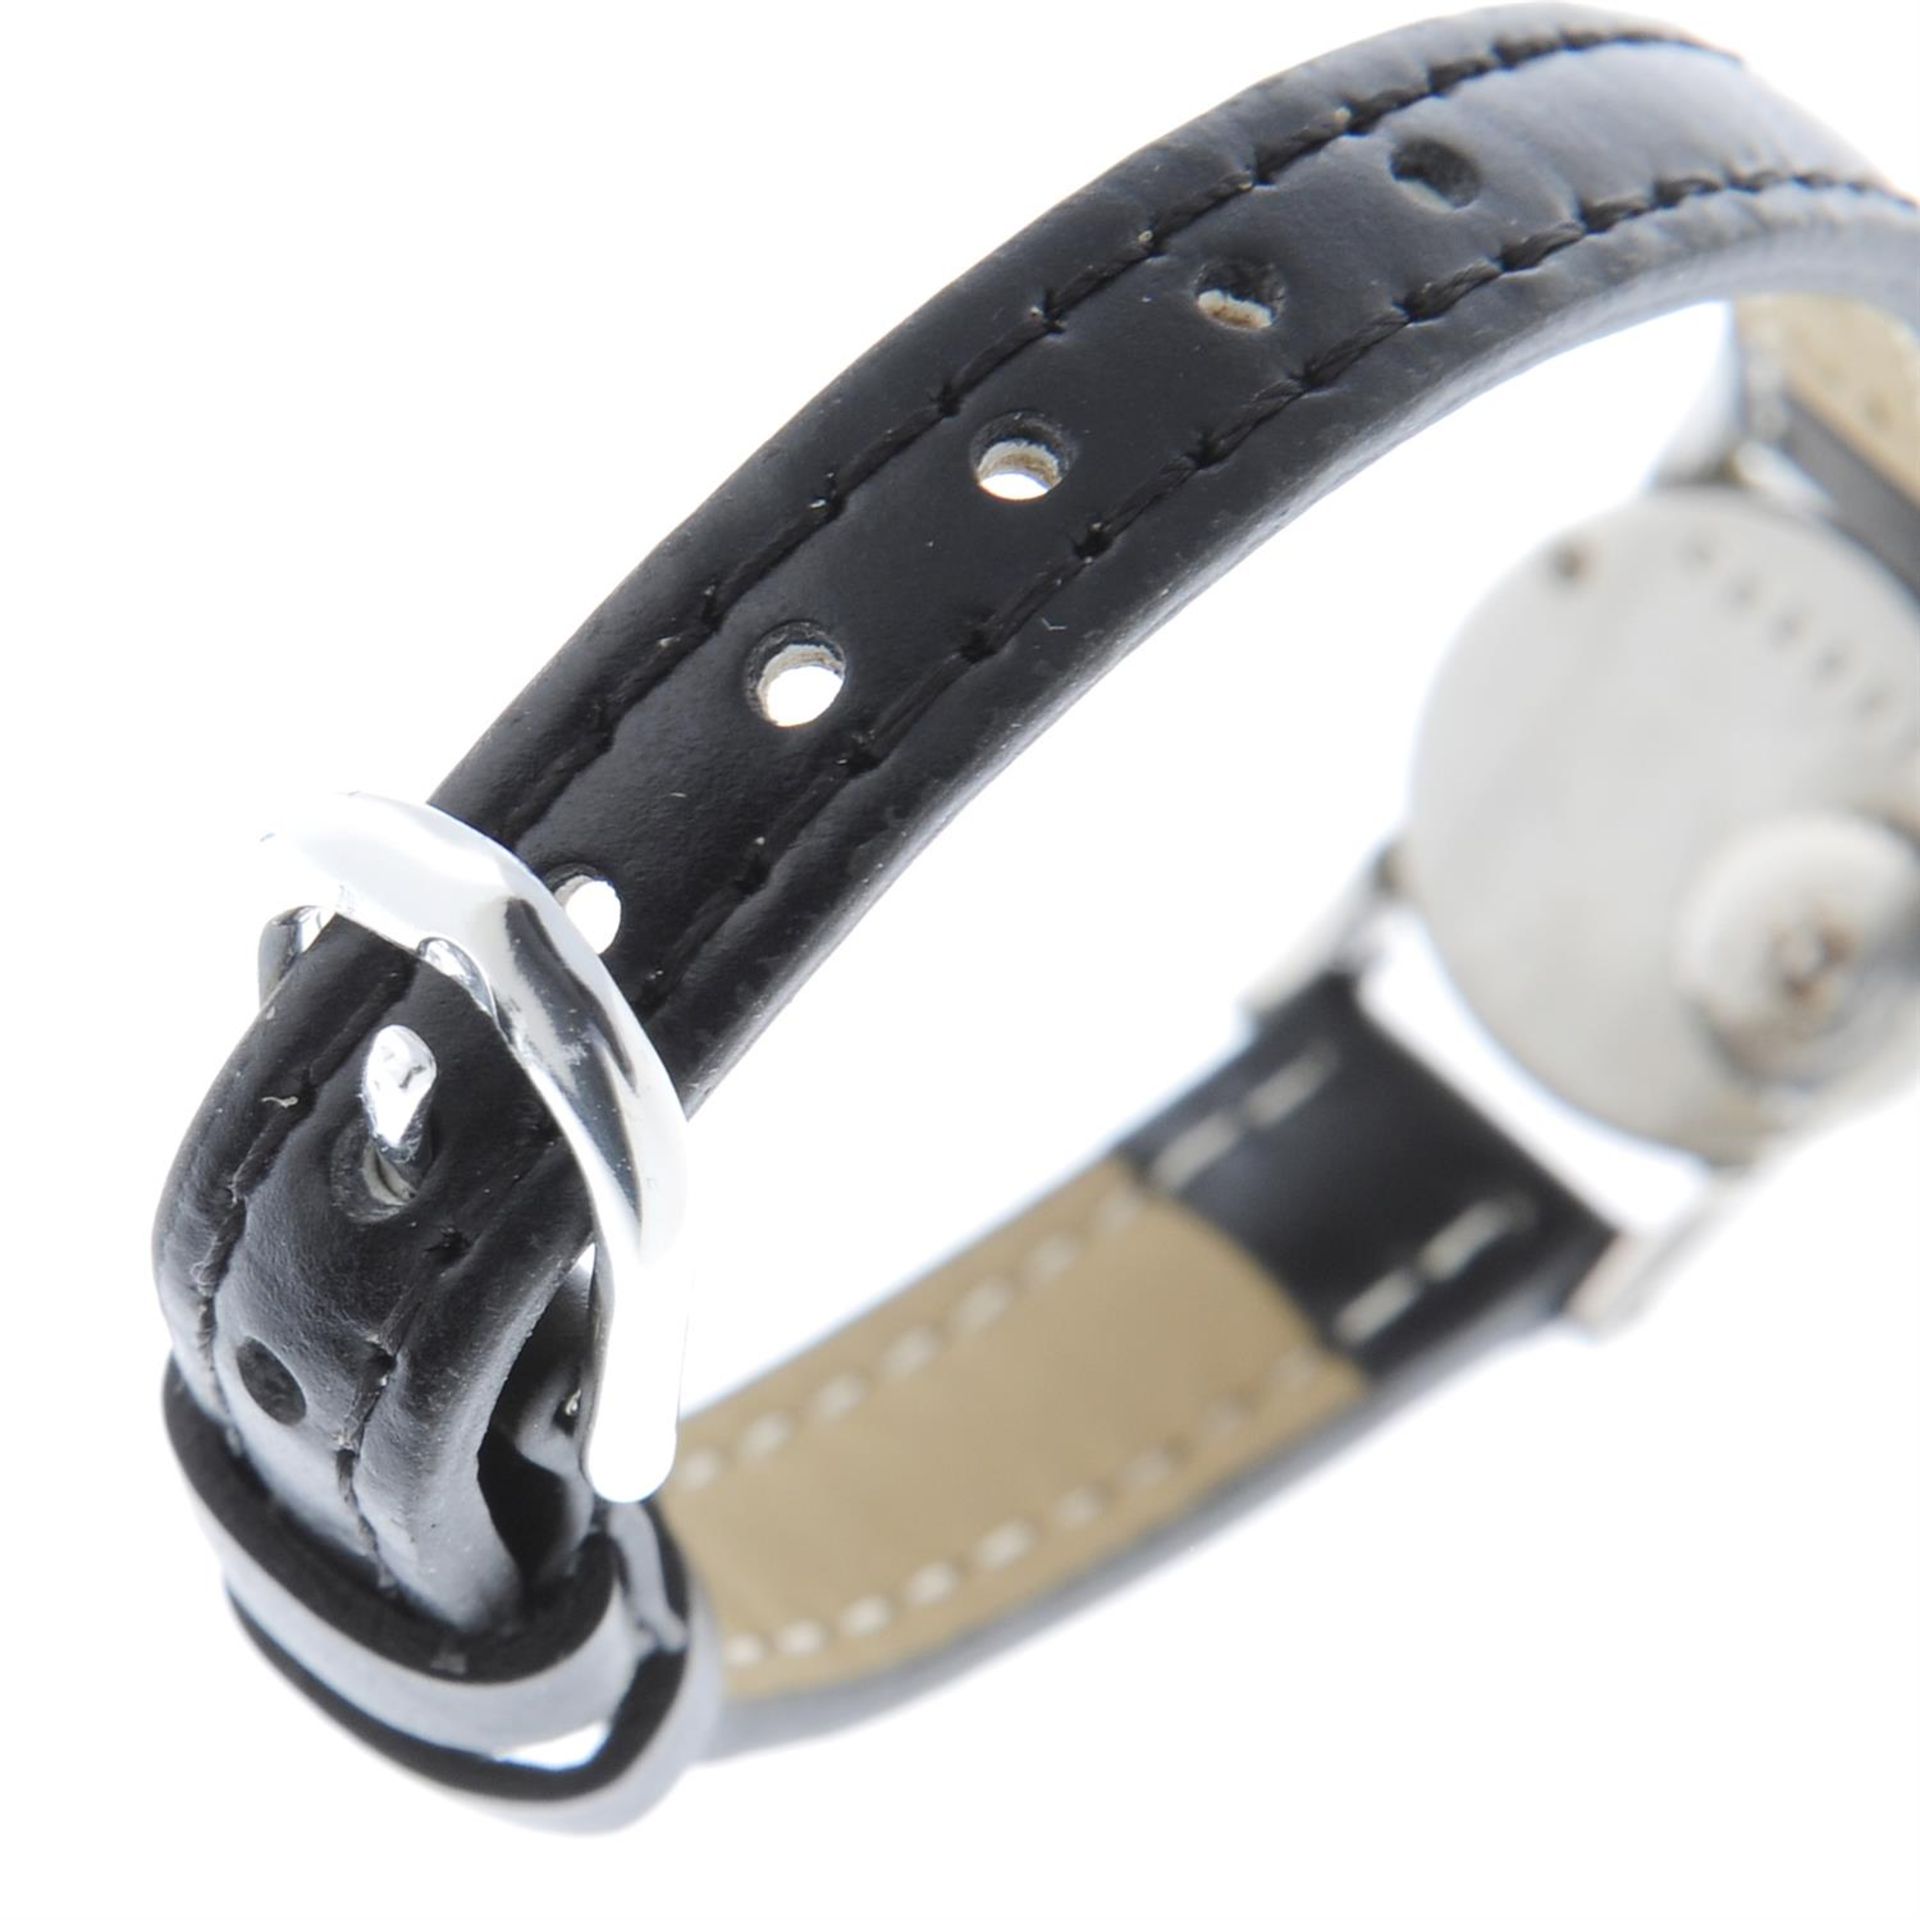 JAEGER LECOULTRE - a stainless steel wrist watch, 16mm. - Bild 2 aus 4